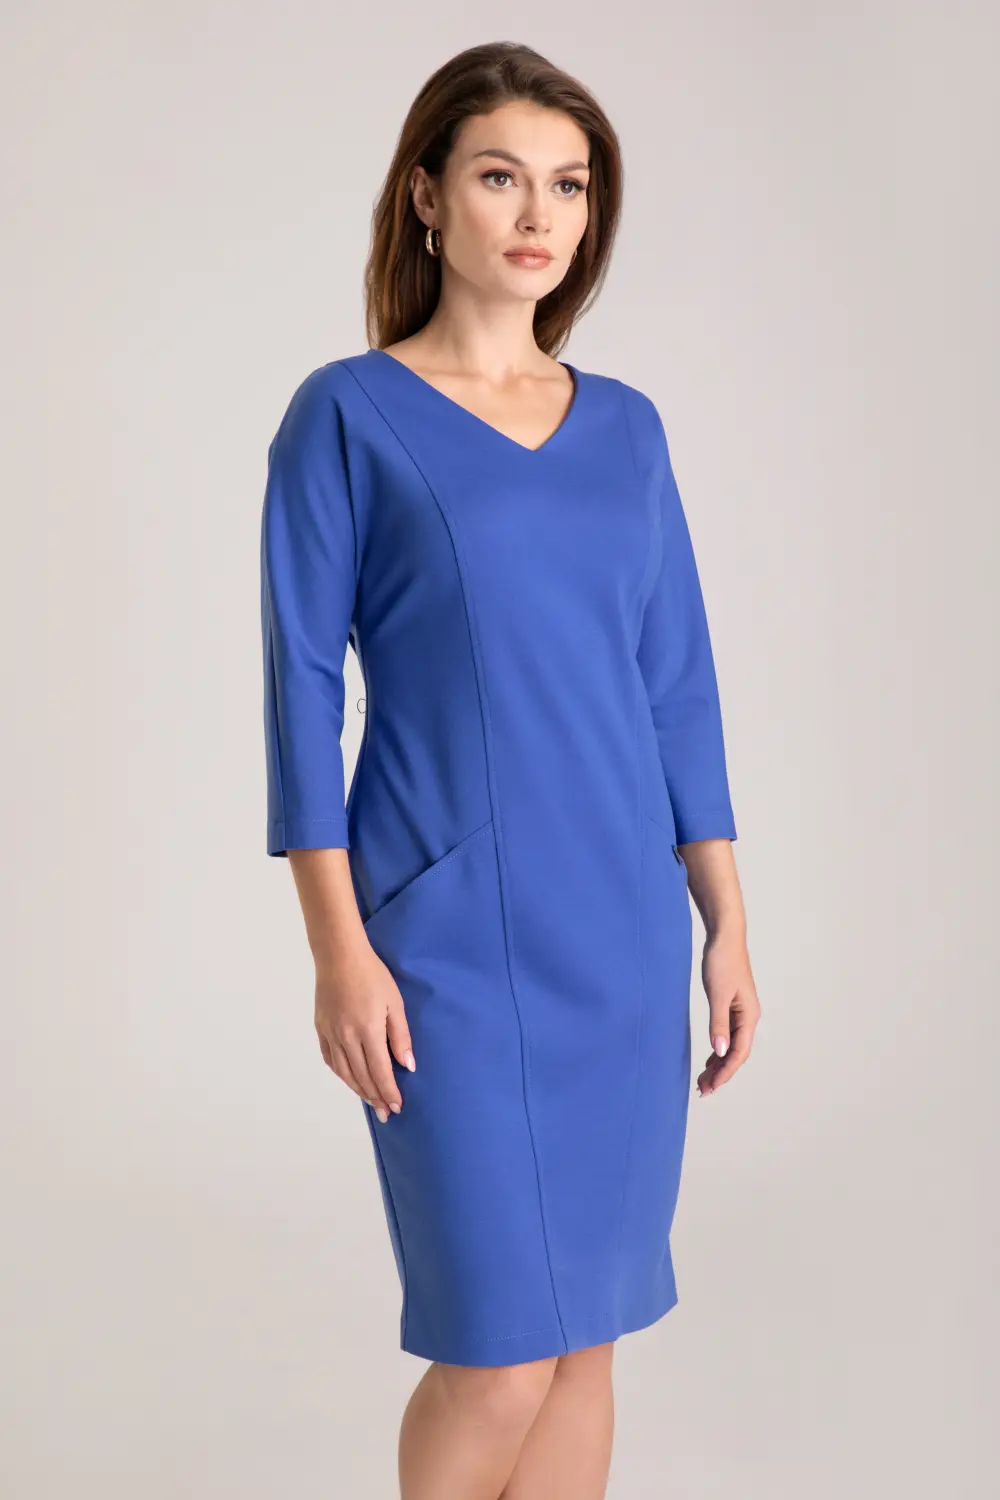 Niebieska dzianinowa sukienka z rękawem 3/4, dekolt w szpic, kieszenie polska marka Vito Vergelis